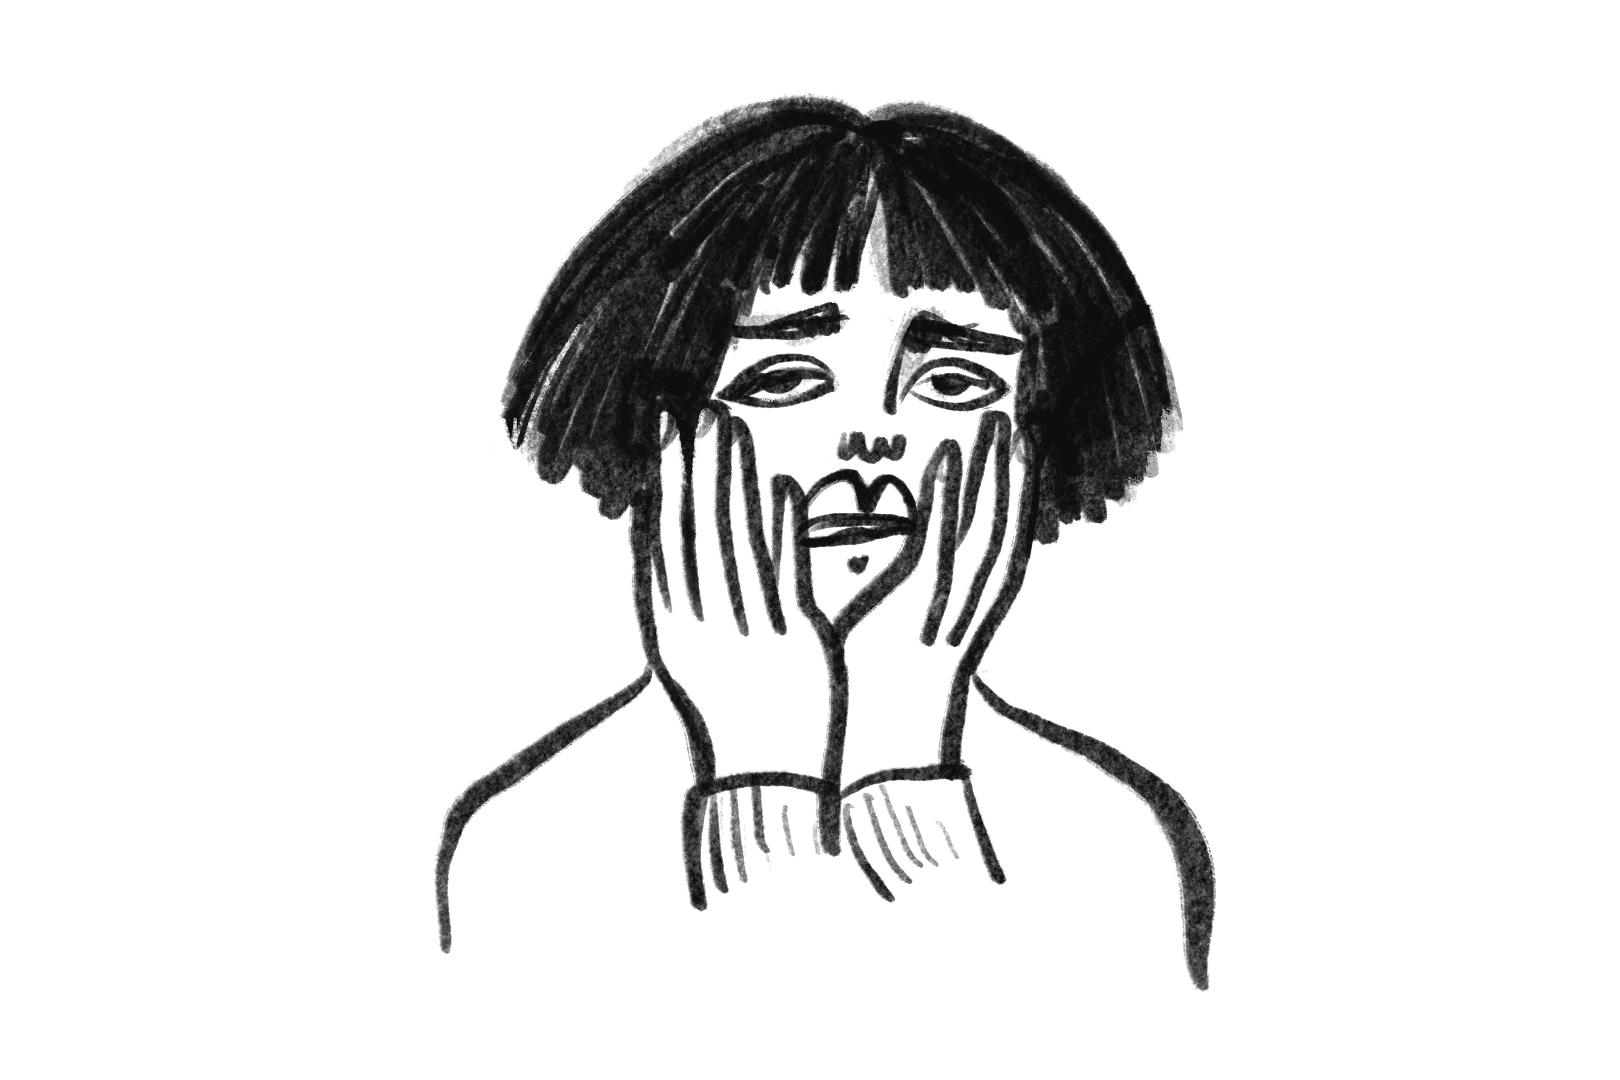 Schwarz-weiße Illustration einer besorgten Frau